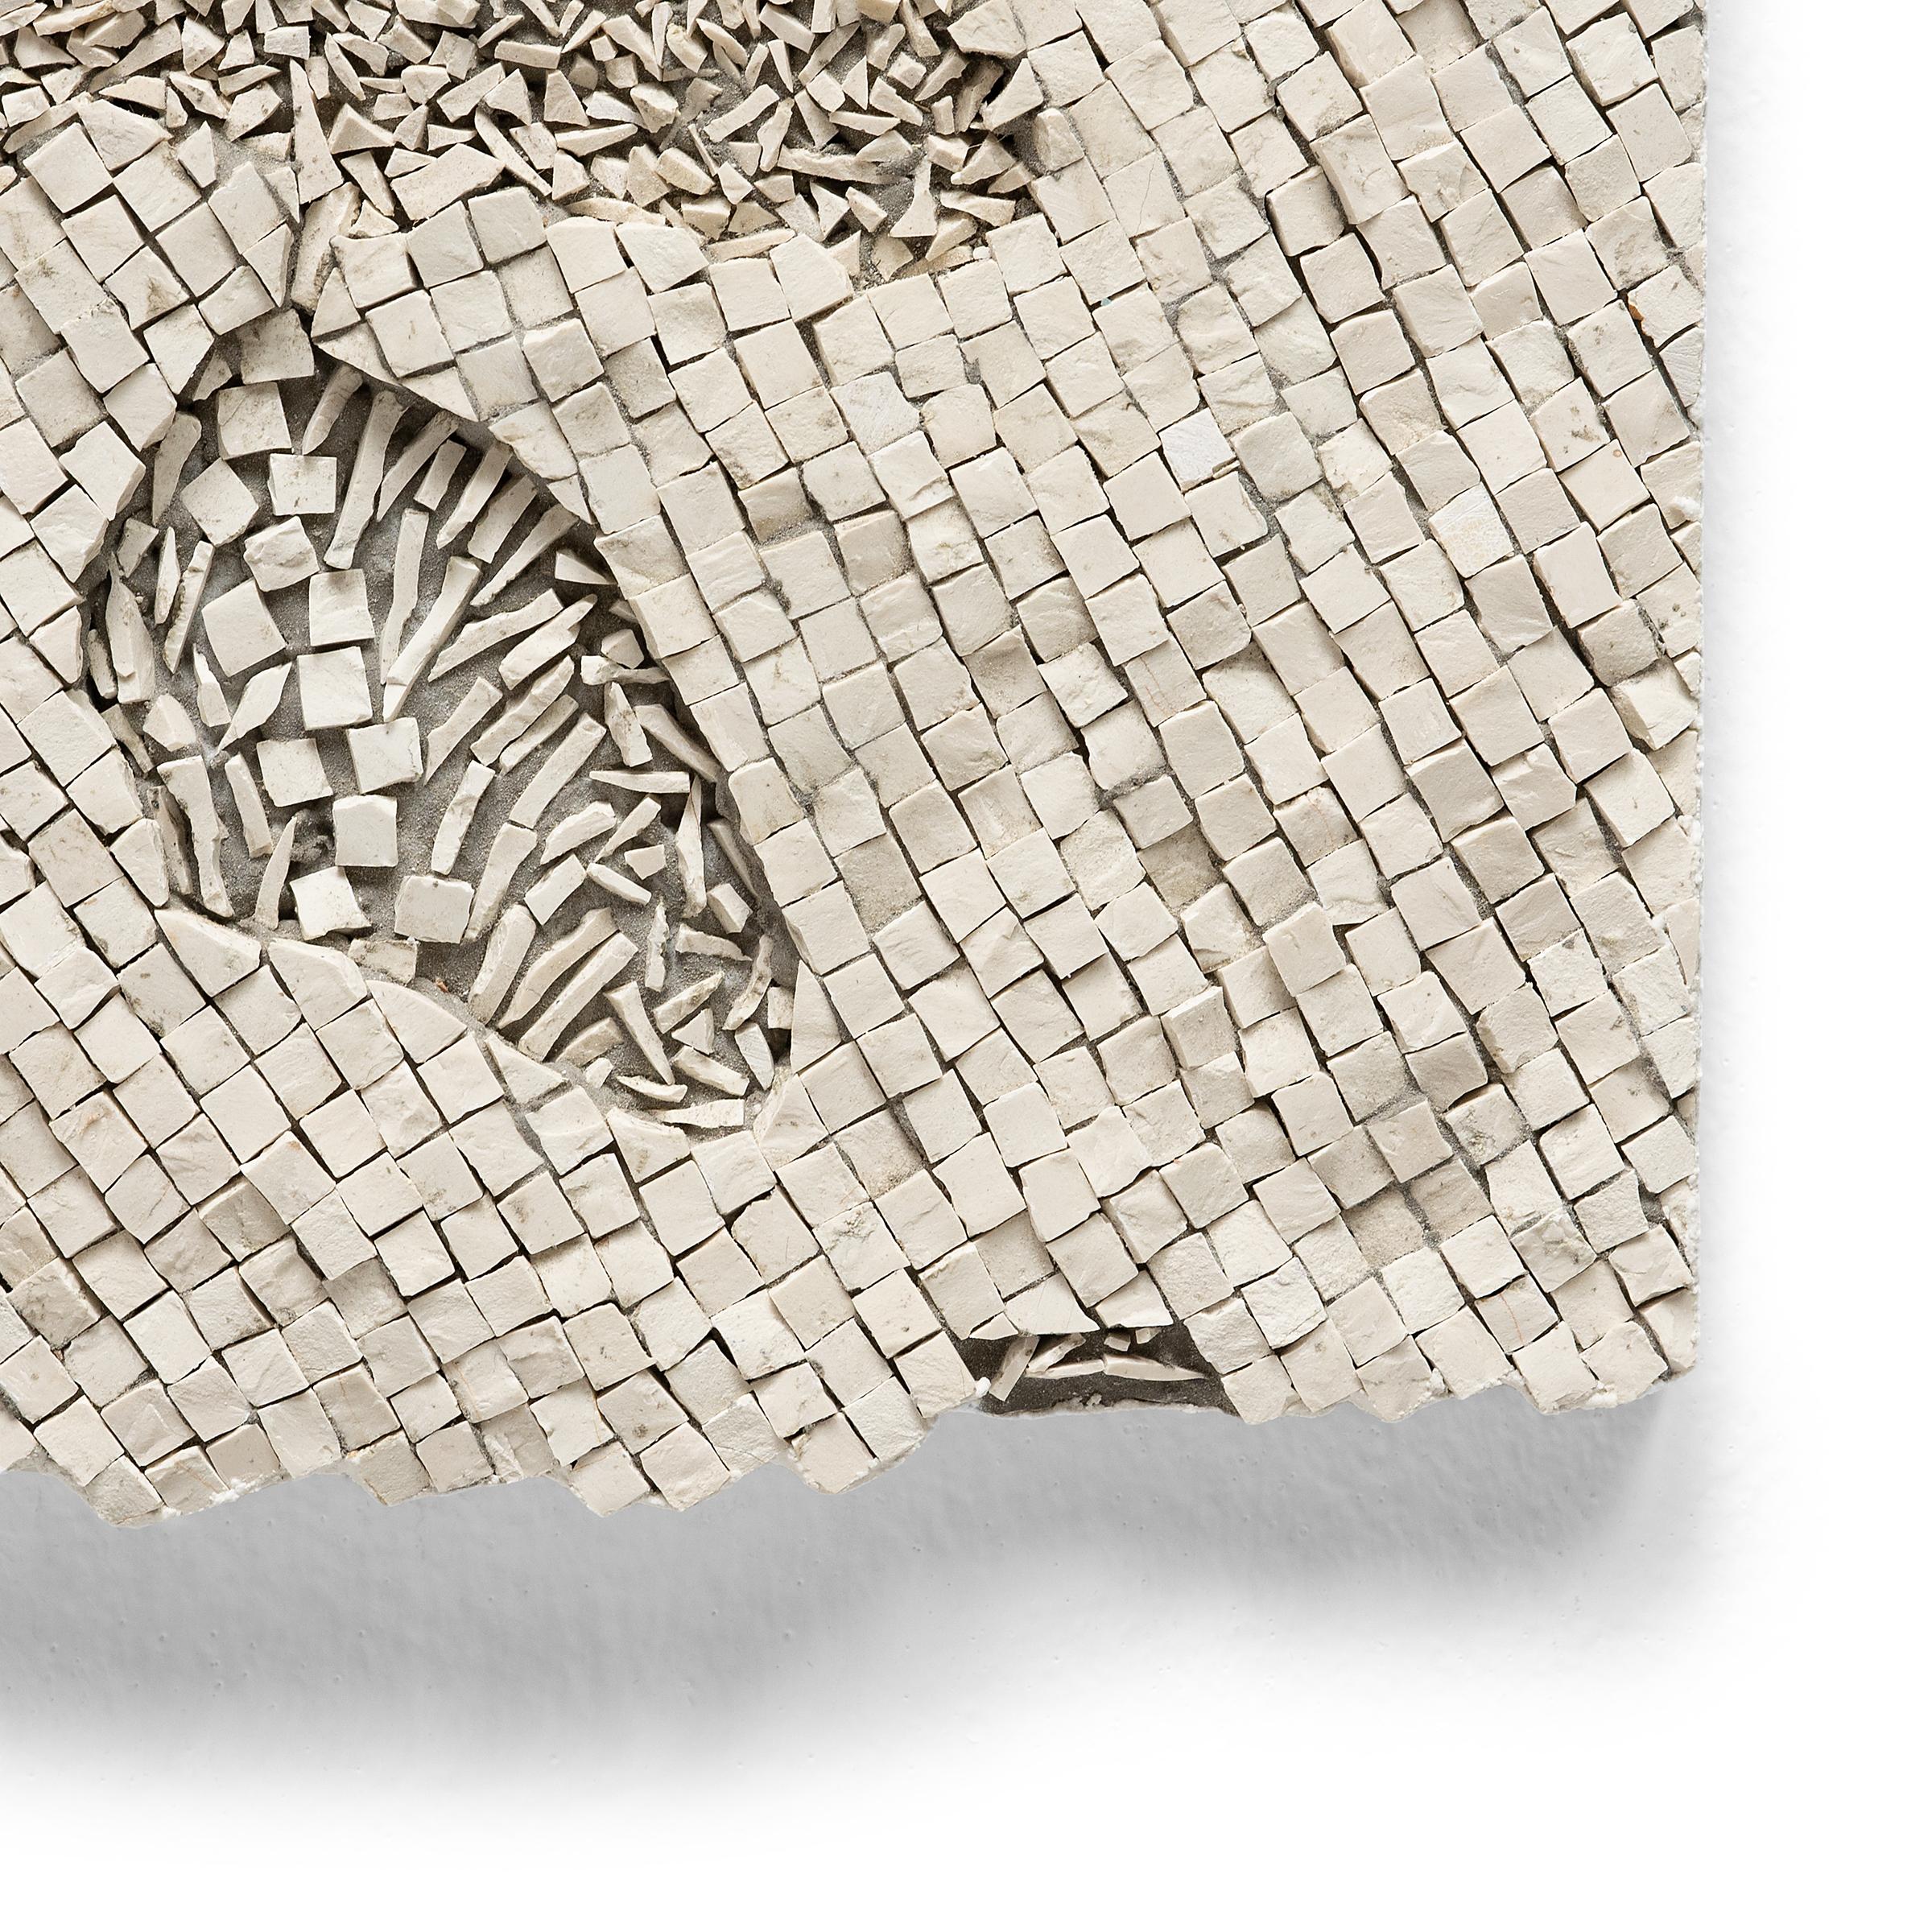 Les compositions abstraites de l'artiste mosaïste japonais Toyoharu Kii, complexes, éthérées et très texturées, reflètent une approche sophistiquée de l'art technique de la mosaïque. Formé à Florence, en Italie, Kii crée ses mosaïques modernes en